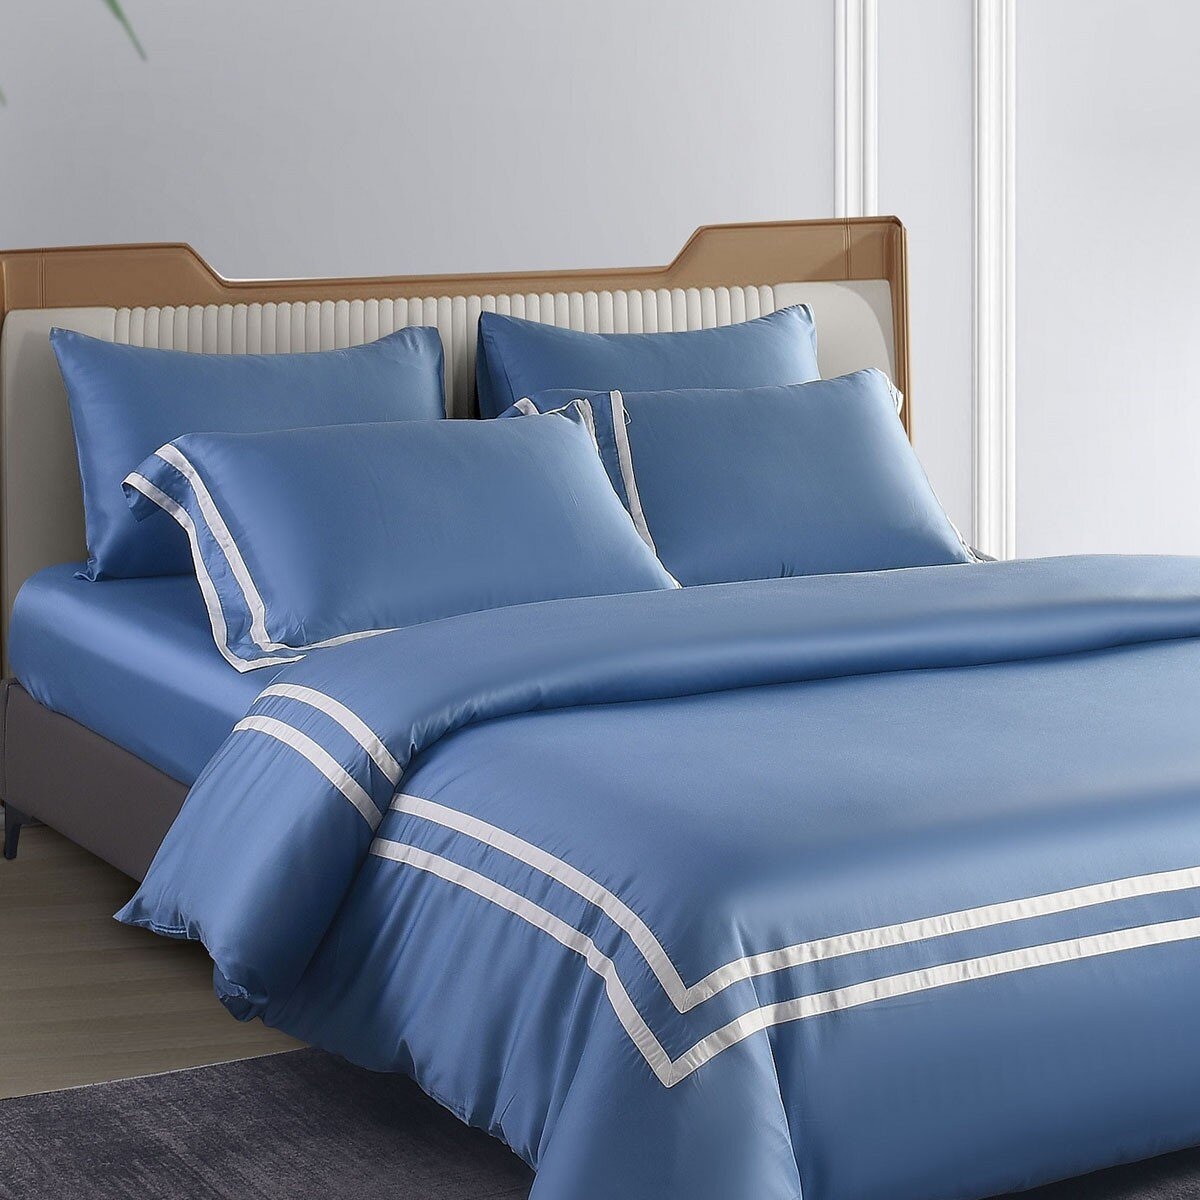 Don Home 萊賽爾素色雙人特大被套床包六件組 182公分 X 212公分 海藍